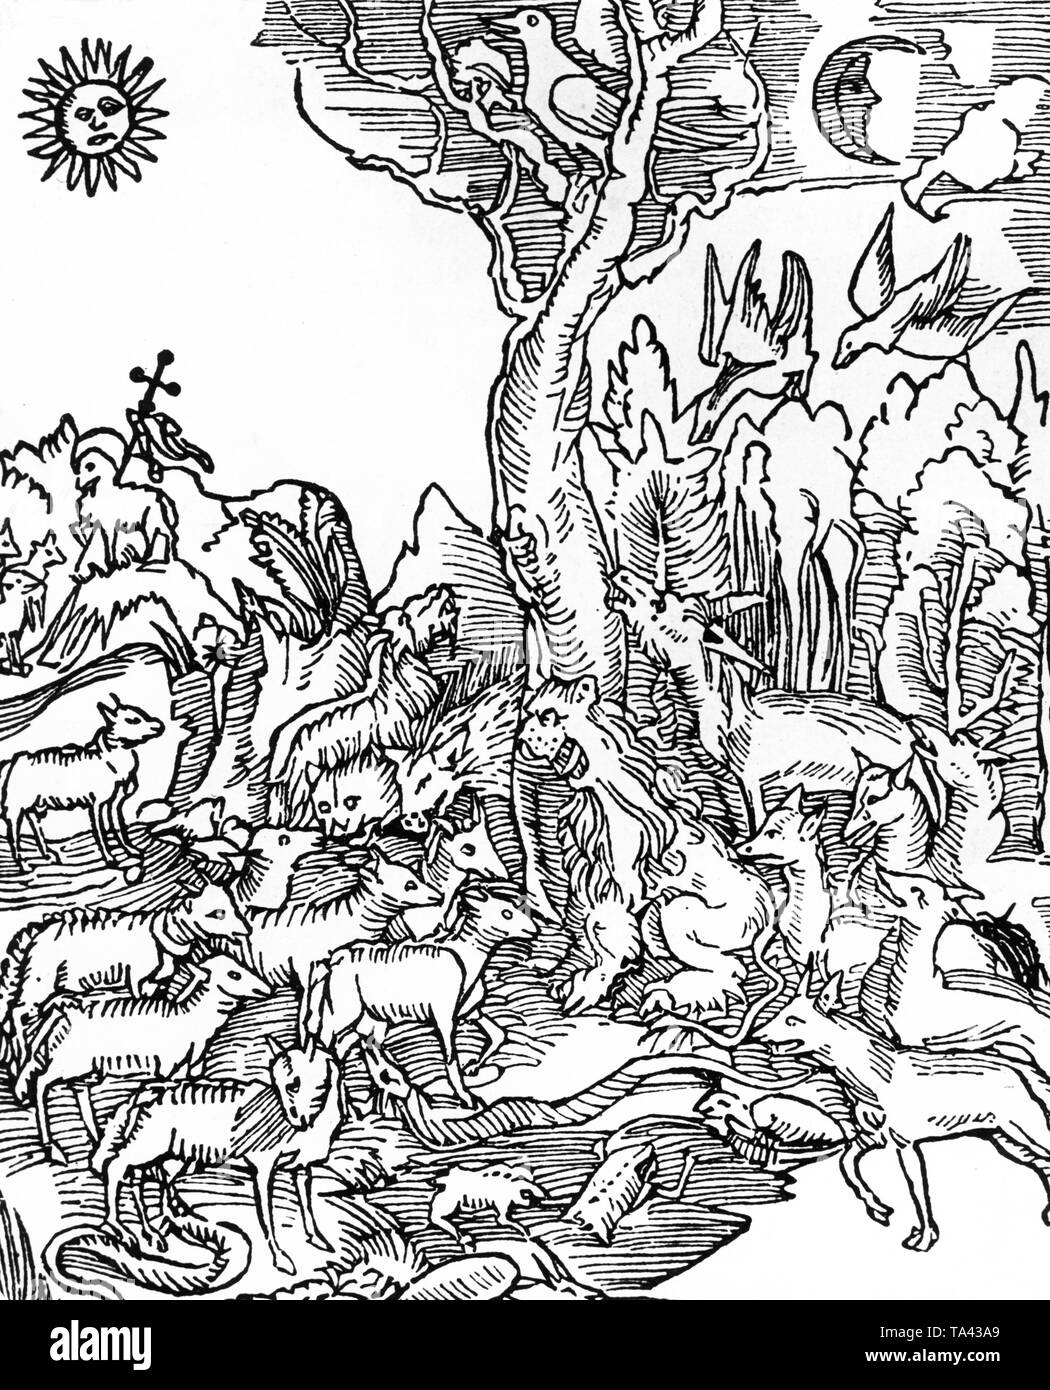 Mythisches Bild, die 'Wittembergische Nachtigall" (Wittemberg Nachtigall) aus einem Gedicht von Hans Sachs. Dies ist eine allegorische Gedicht mit Inhalt Unterstützung der Reformation. Stockfoto